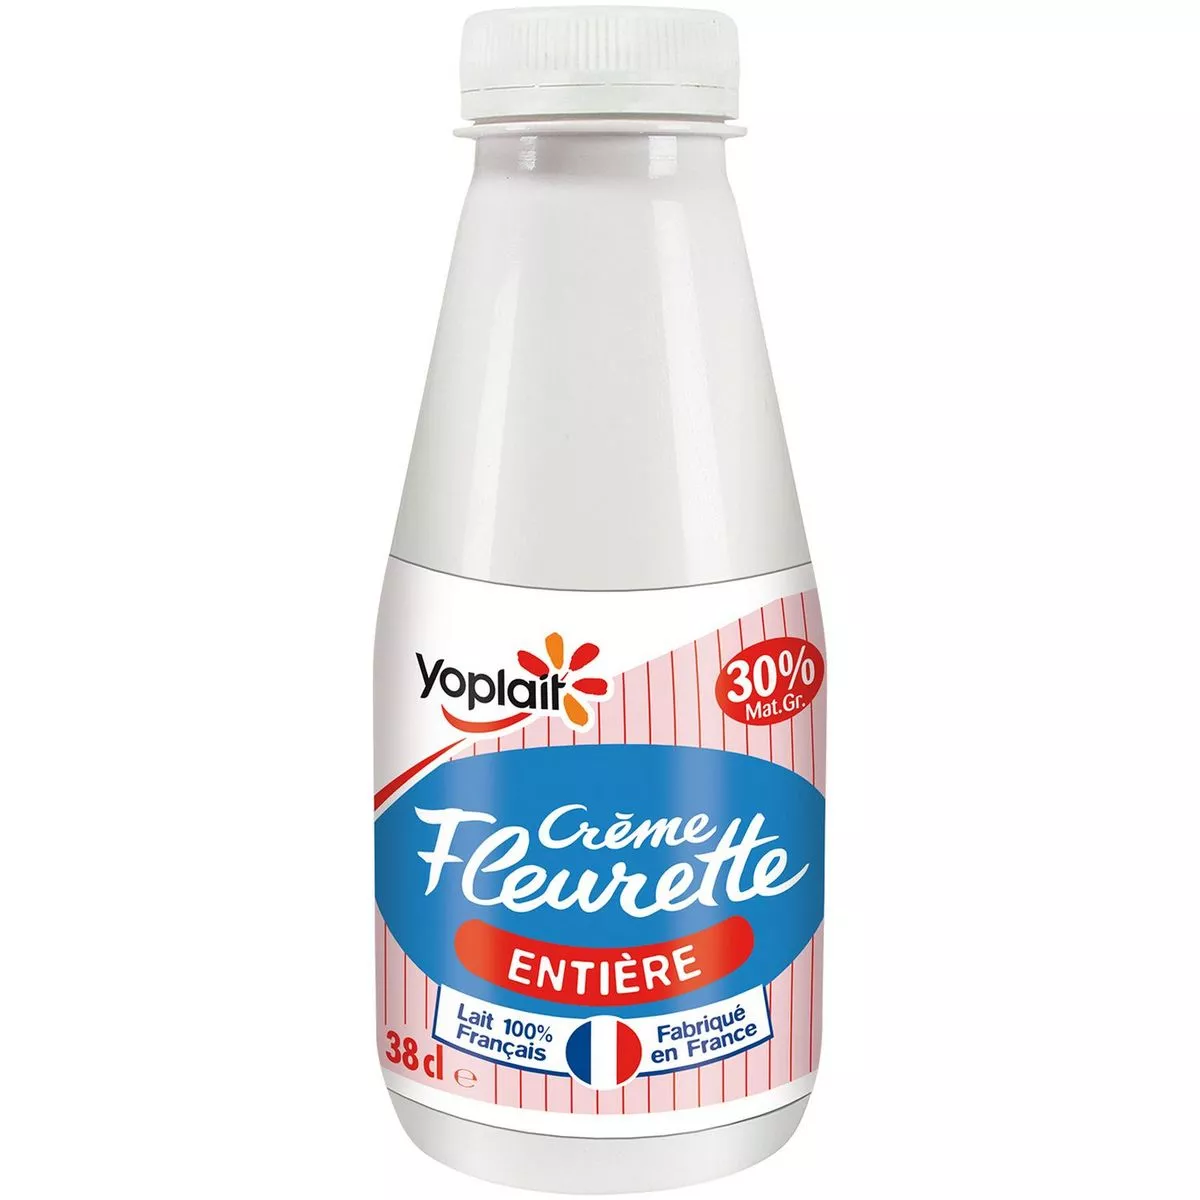 Yoplait Creme Fleurette Single Cream 15%FAT 38cl